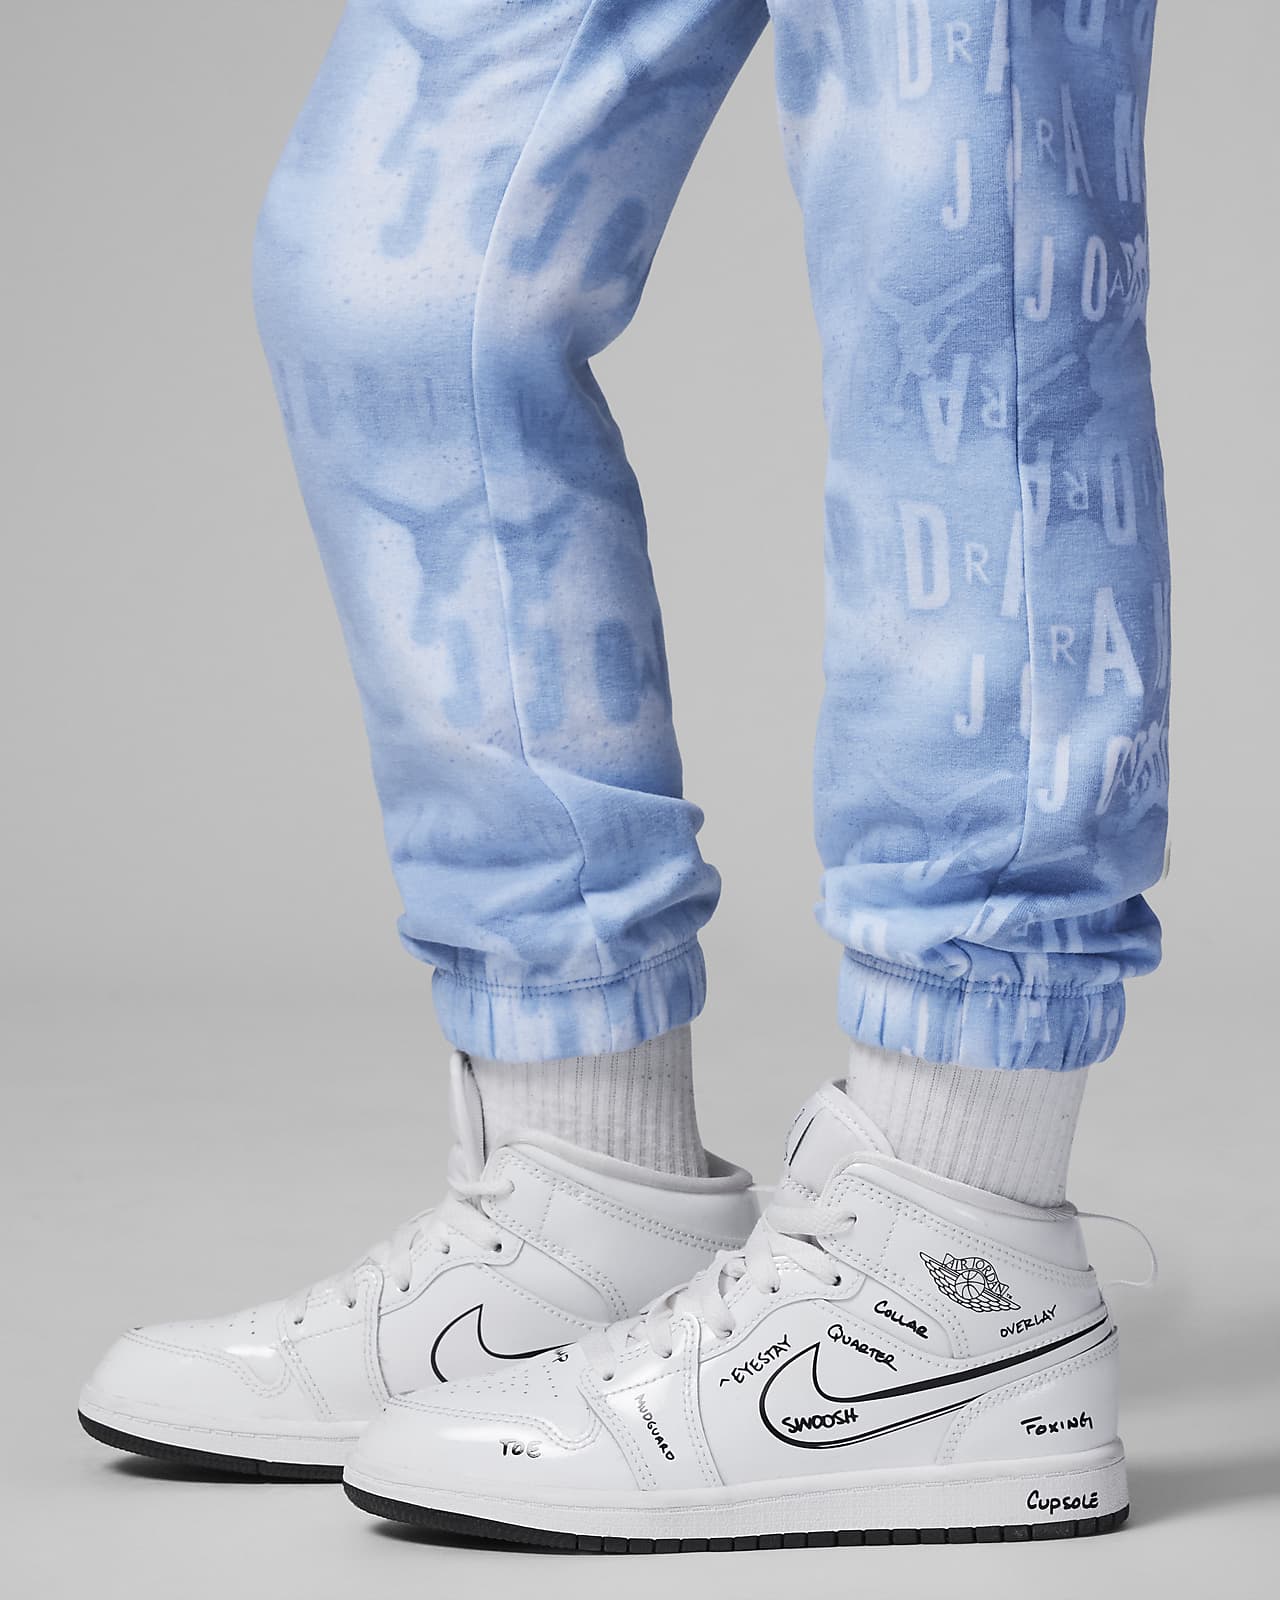 Nike Jordan Essentials Printed Fleece Pants Little Kids Pants